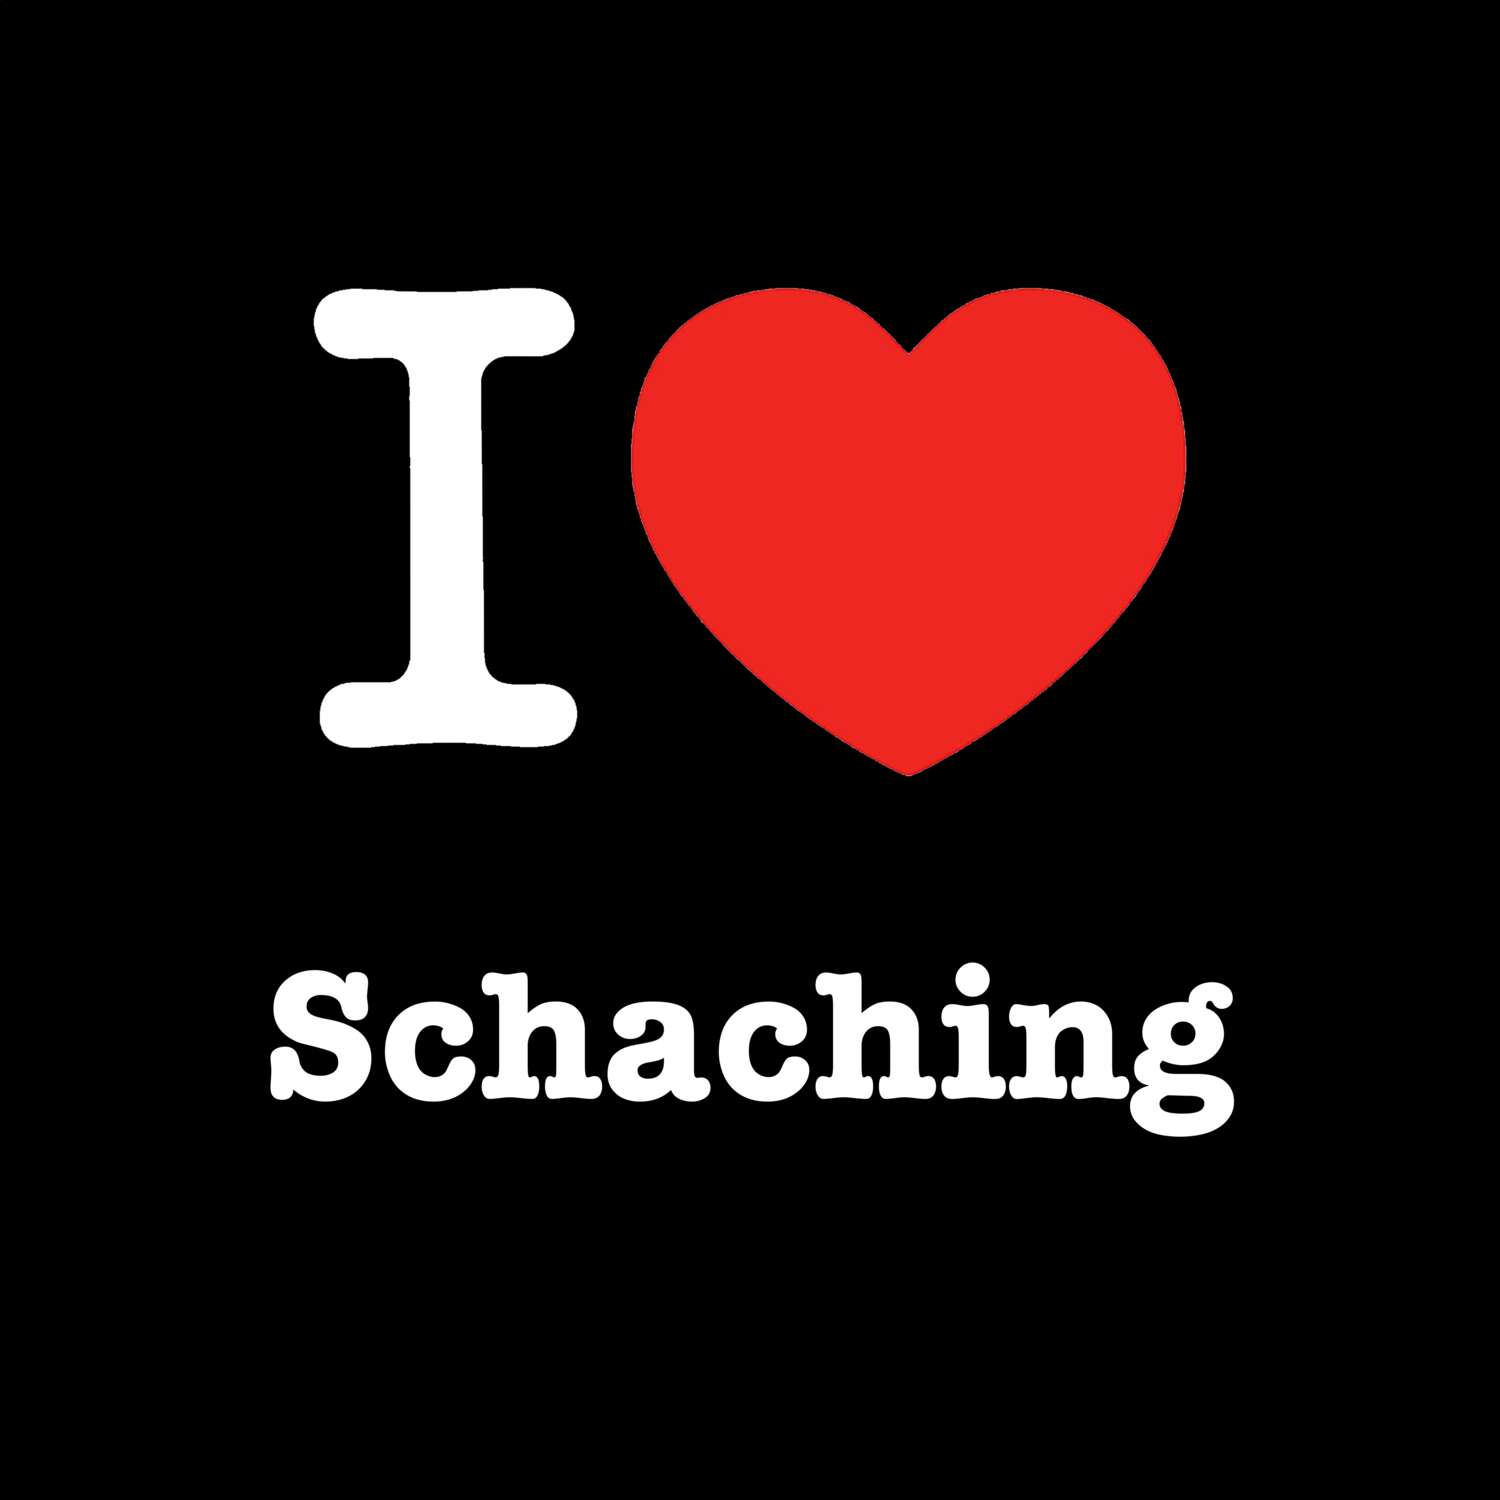 Schaching T-Shirt »I love«